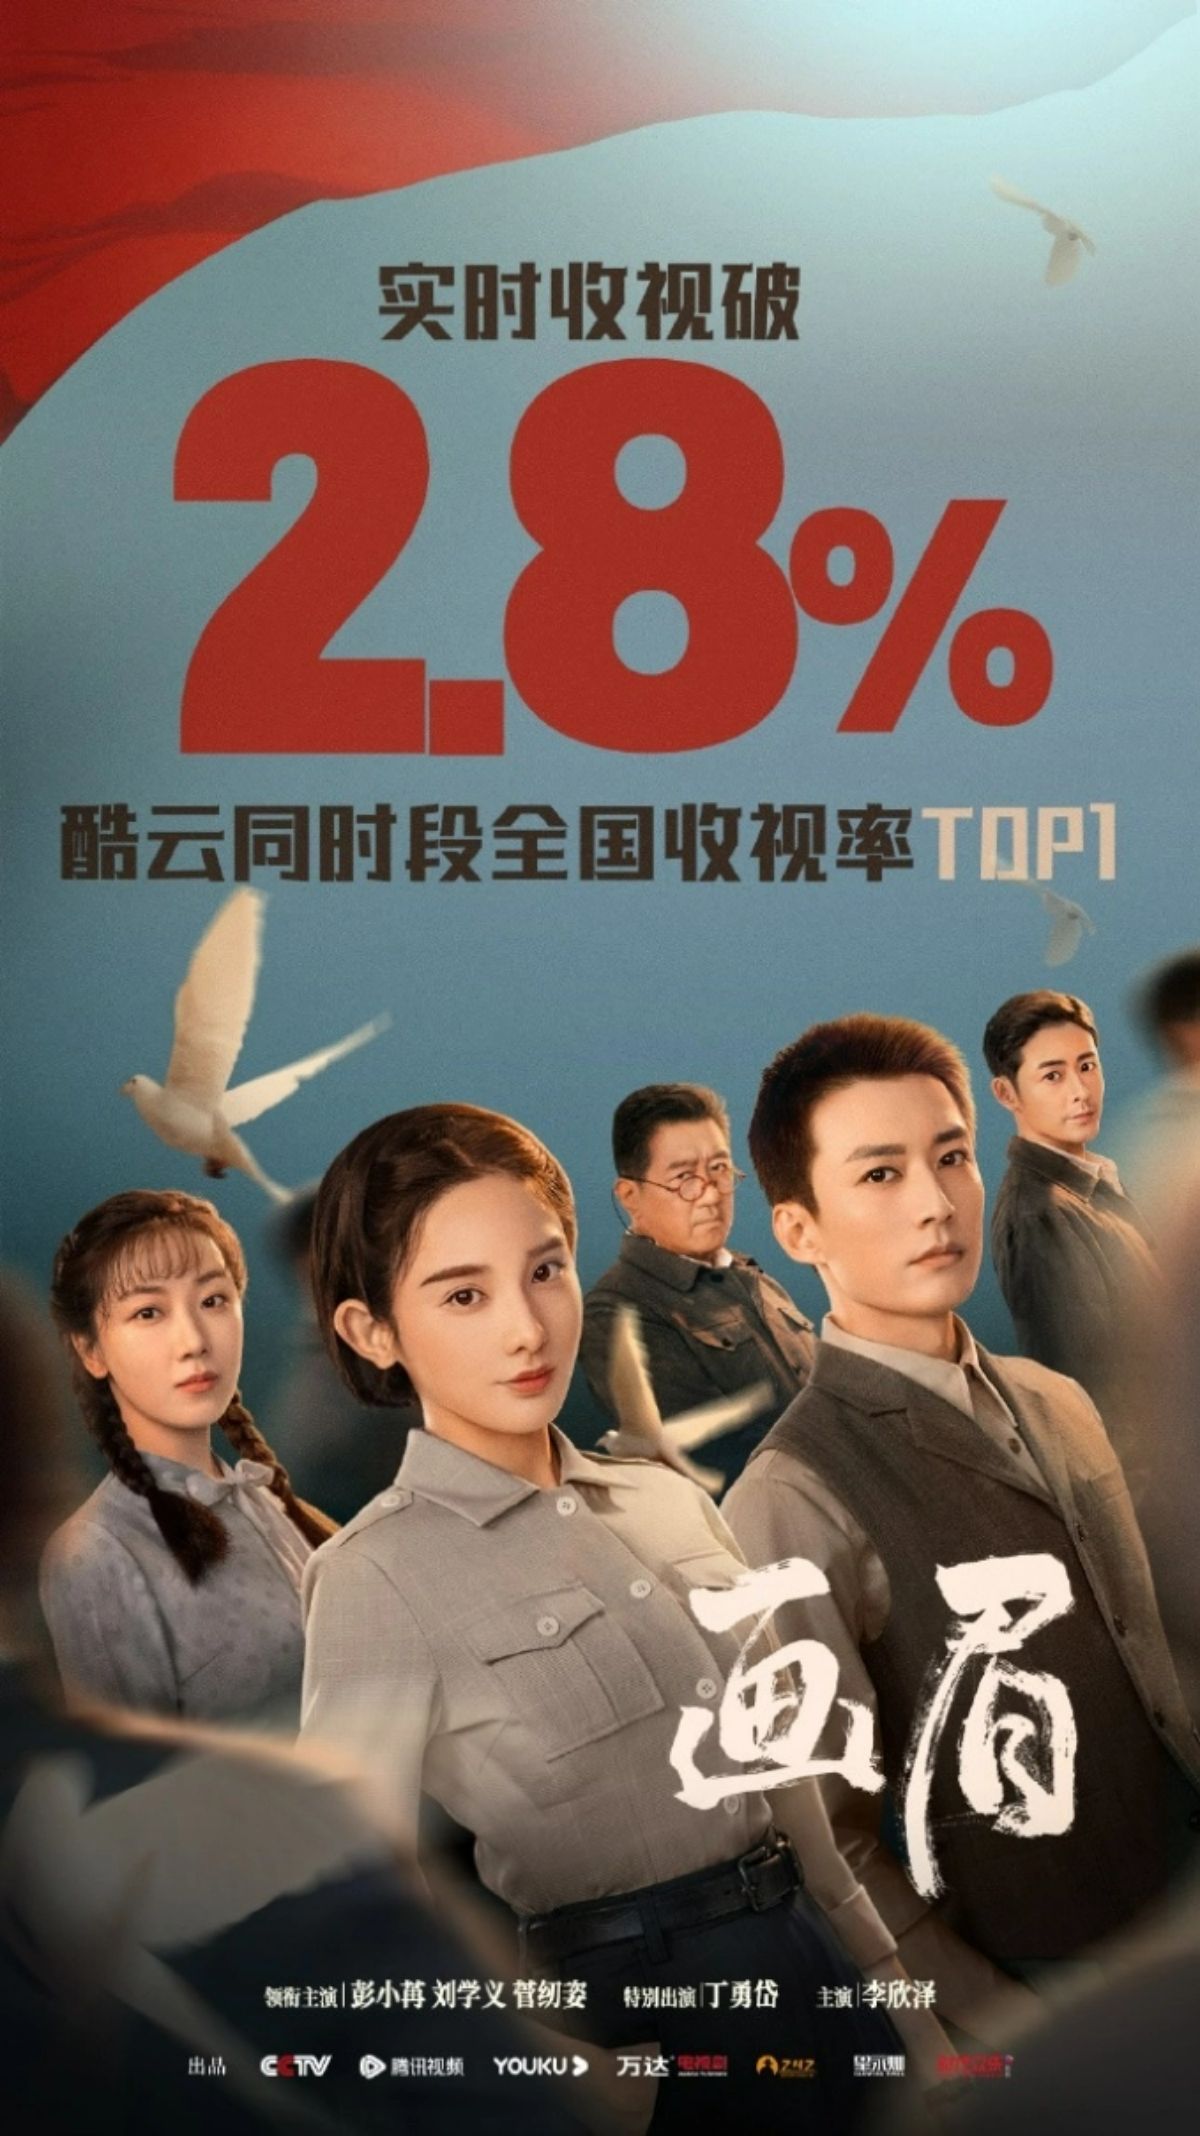 Đến khi về tay của CCTV8, ngay trong ngày đầu lên sóng Họa Mi đã gây choáng khi ghi nhận thành tích siêu khủng với mức rating cao nhất của bộ phim điệp chiến này lên tới 2,88%